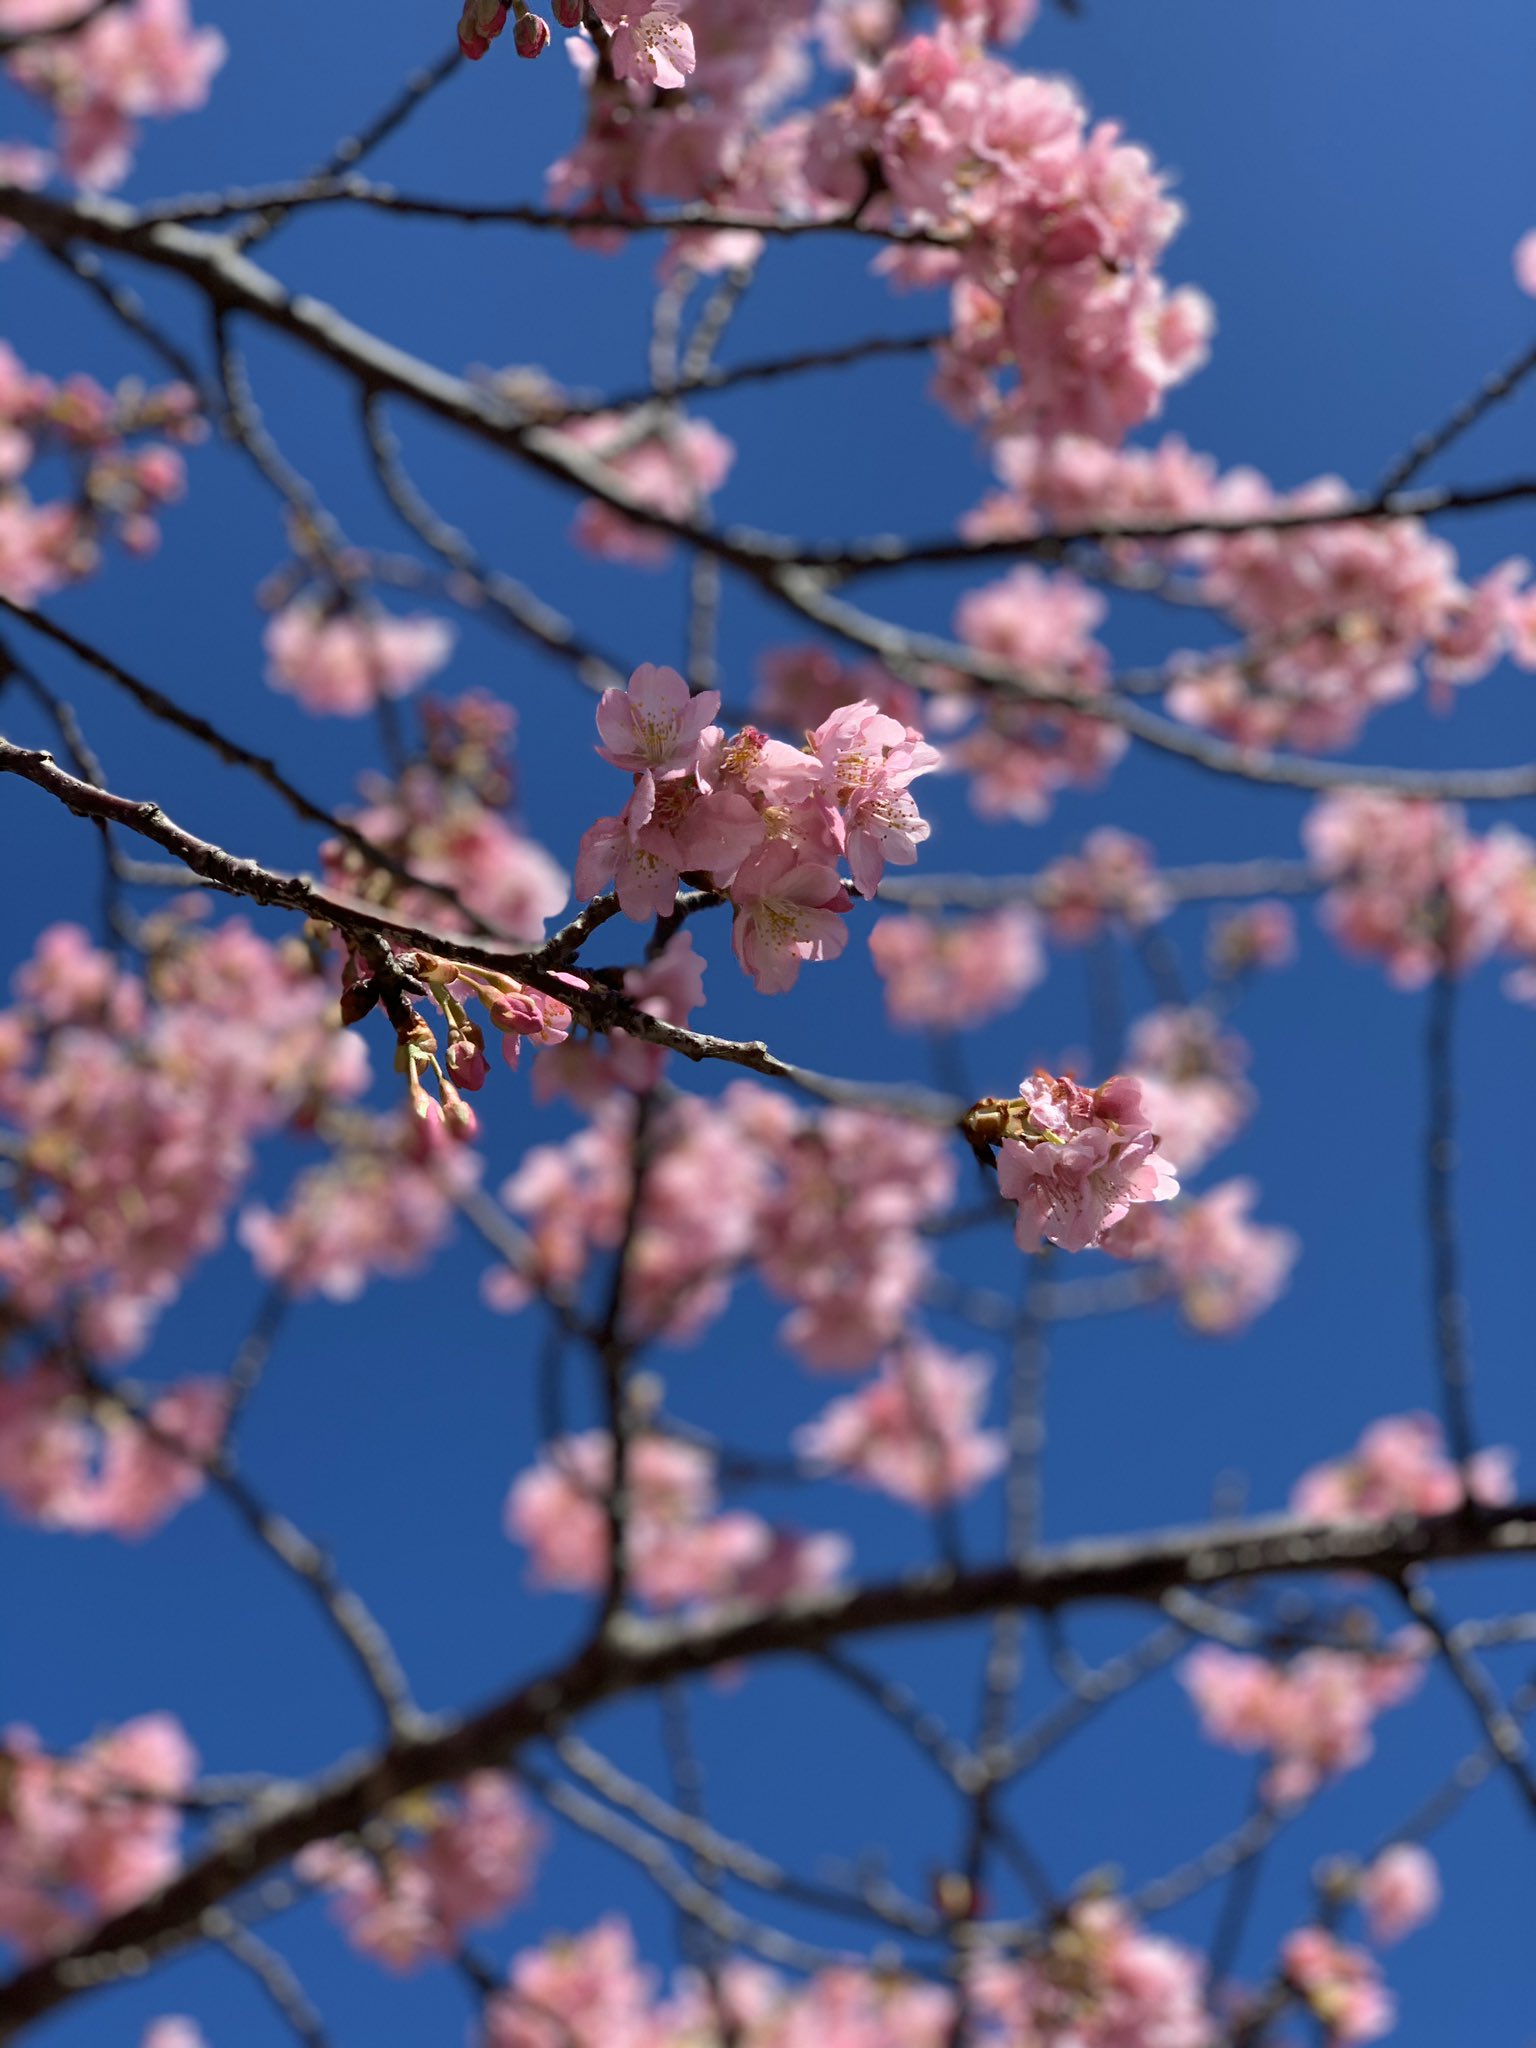 しらこ温泉桜祭り Twitter Search Twitter